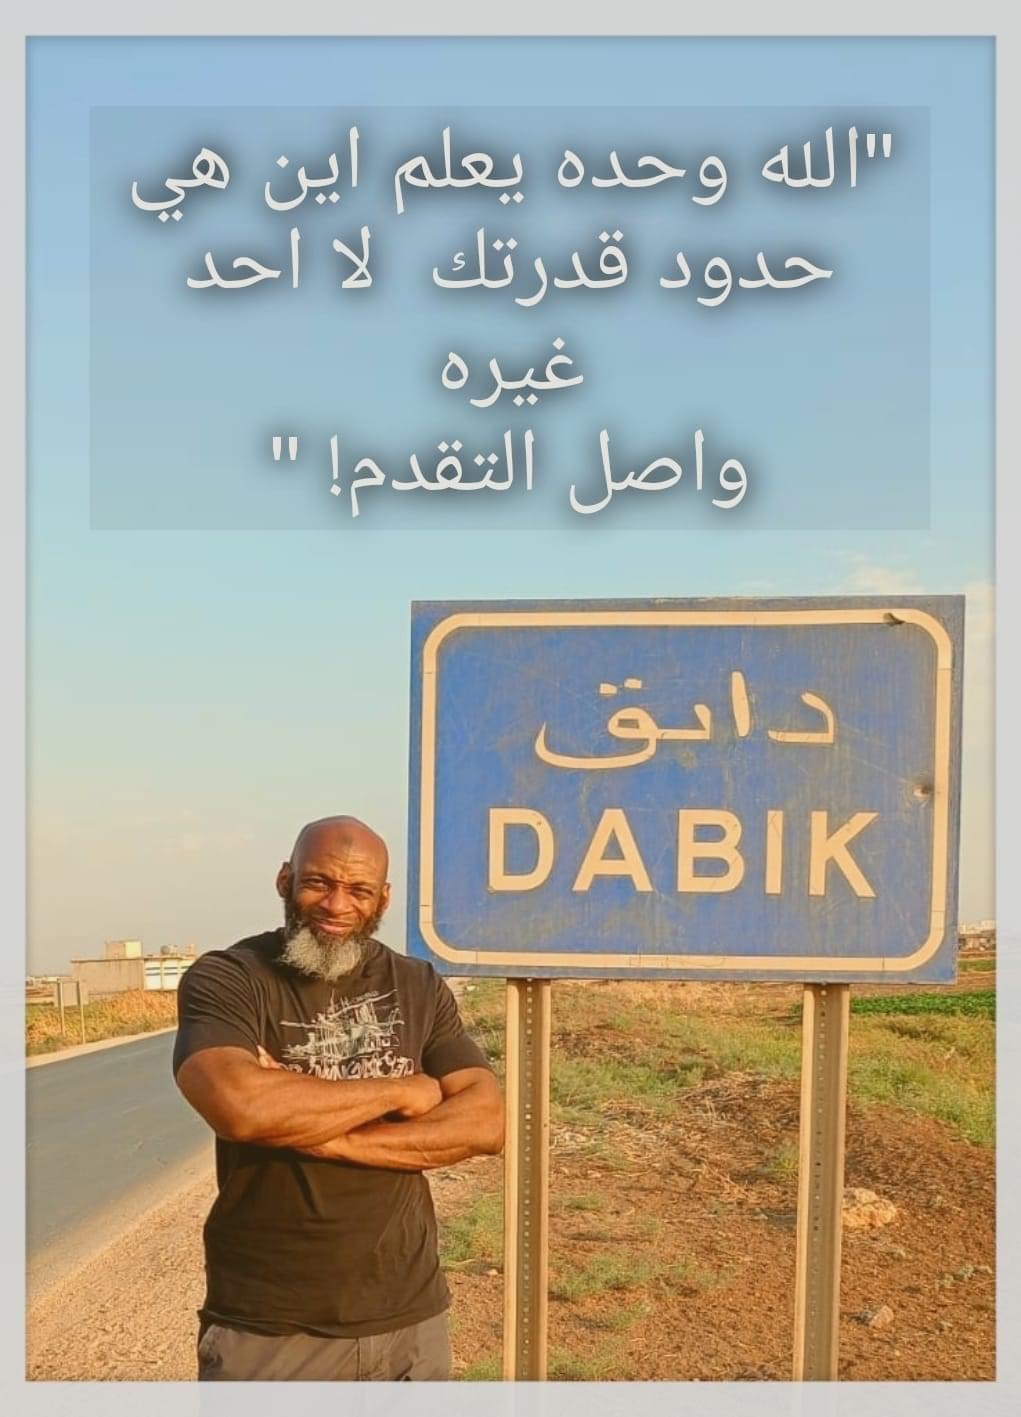 الأمريكي بلال عبد الكريم معتقل الهيئة سابقاً بسبب "فيديو" ينشر صورة ويرفقها بتعليقٍ مثير للتساؤلات